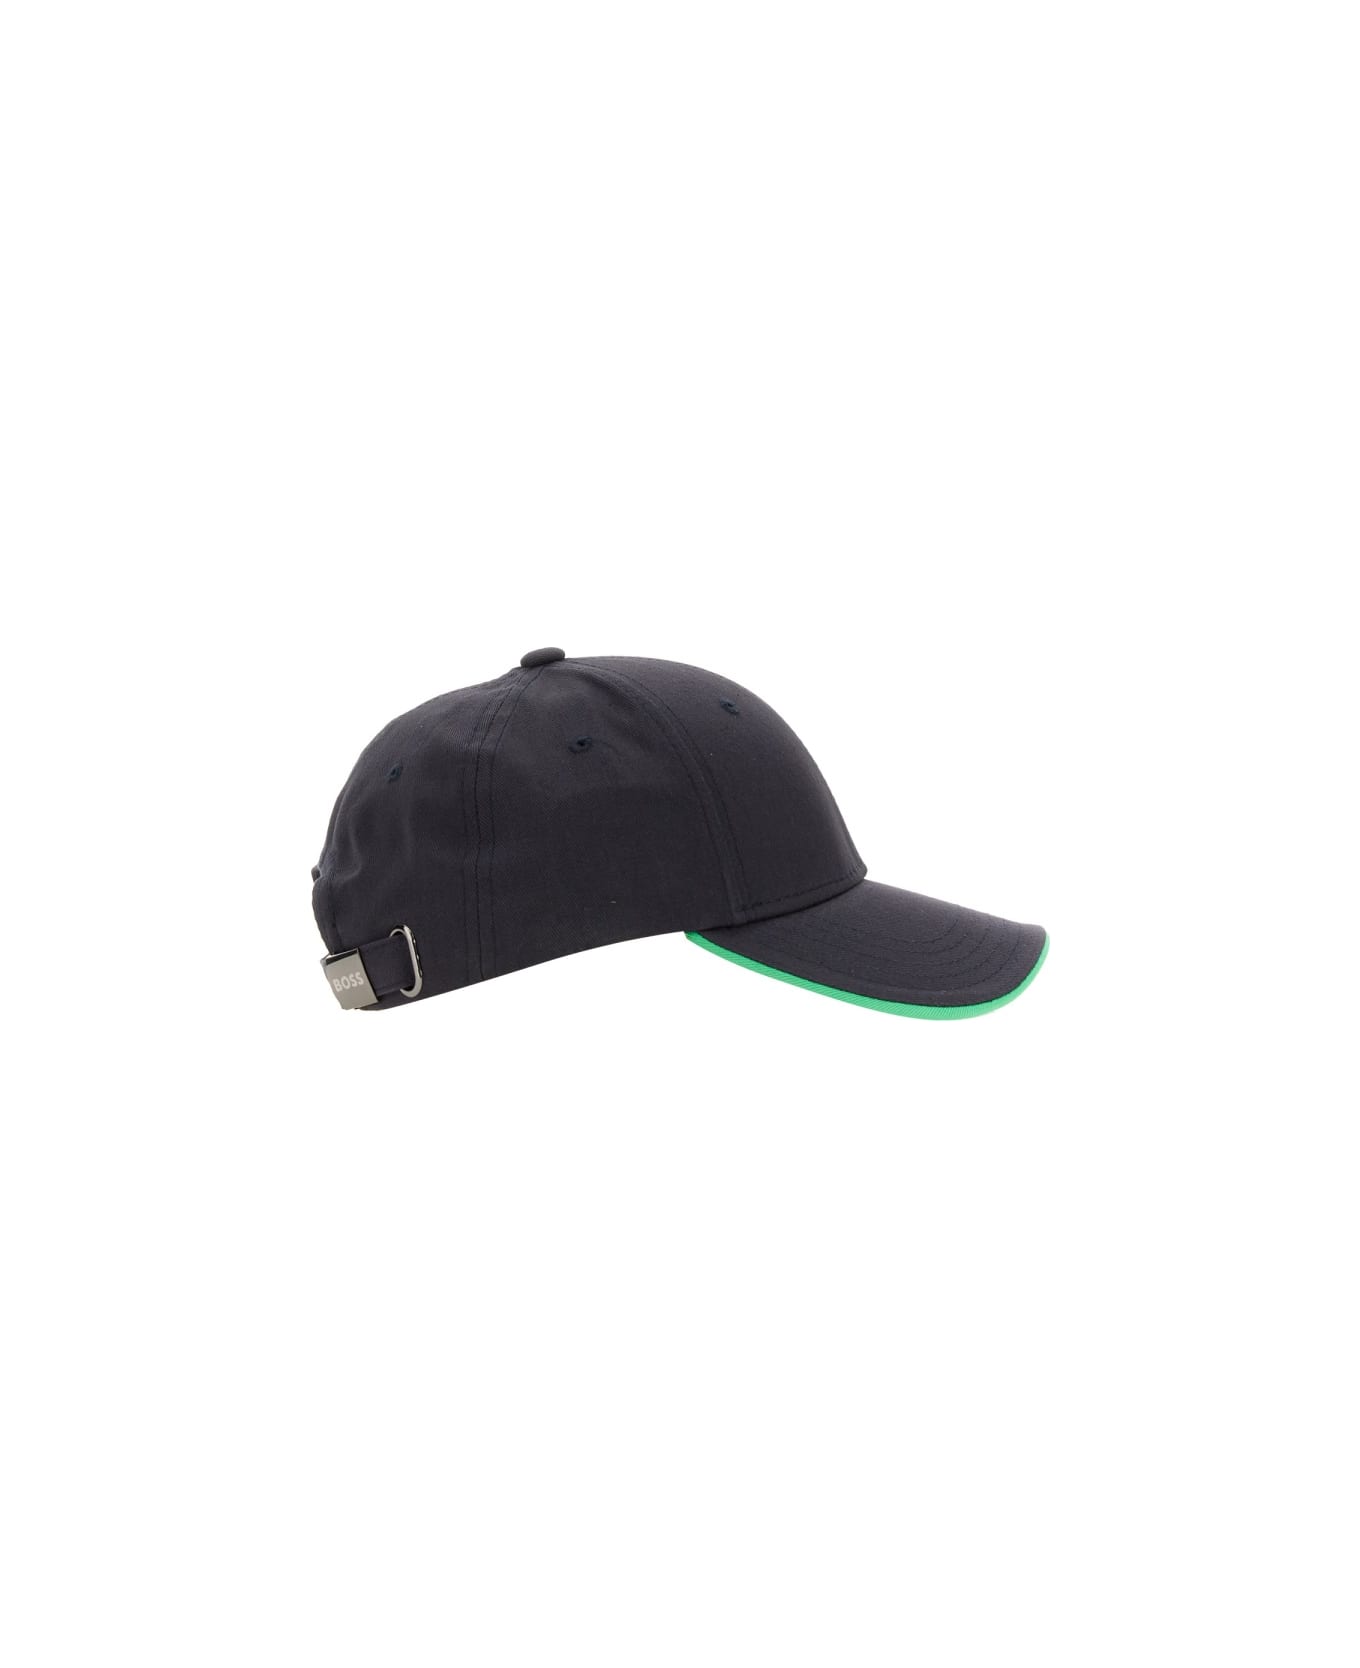 Hugo Boss Baseball Hat With Logo - BLACK